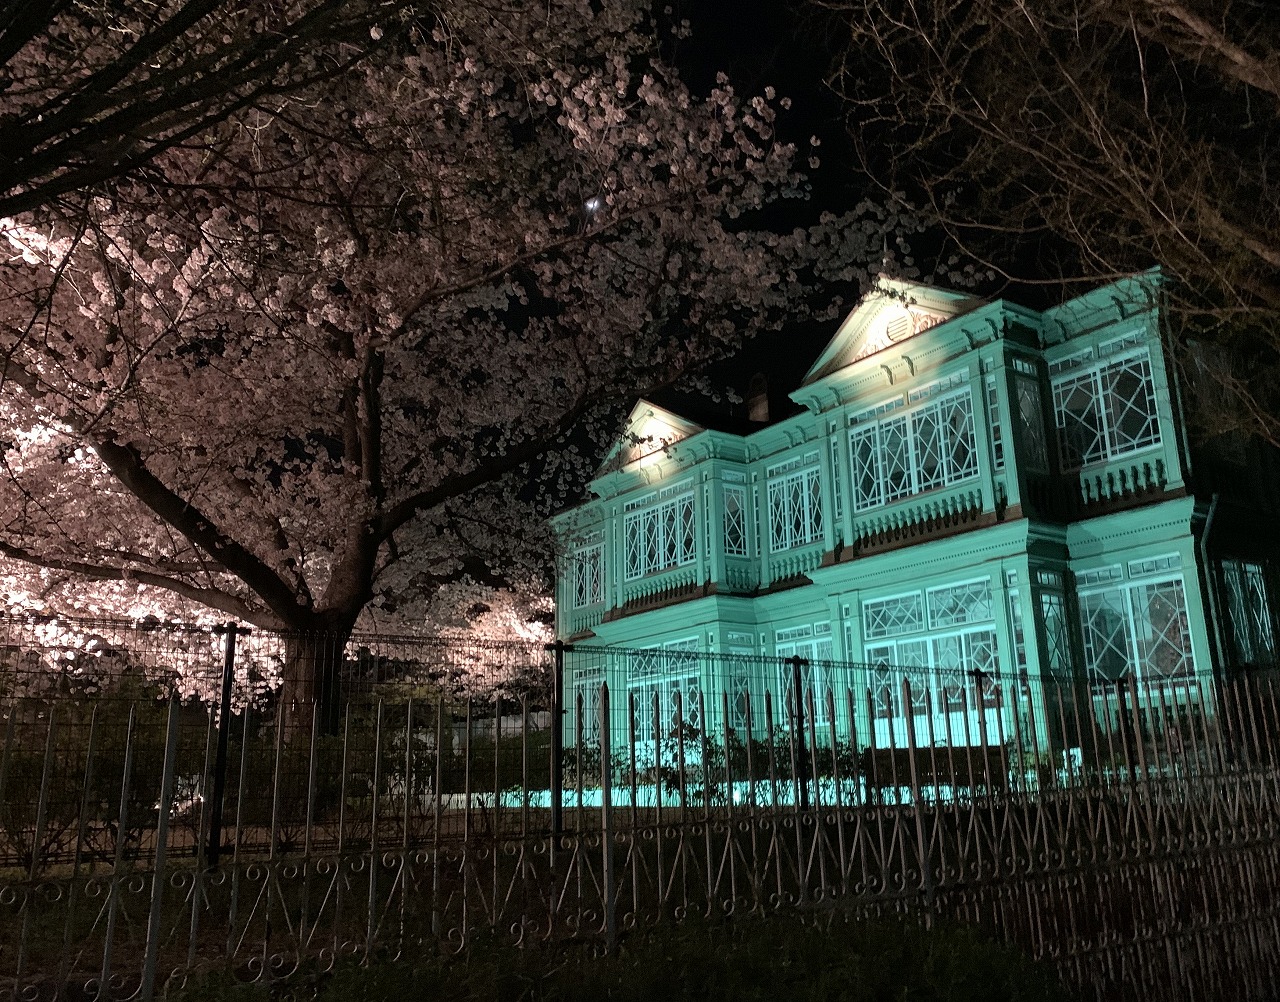 神戸市立王子動物園 夜桜の通り抜け